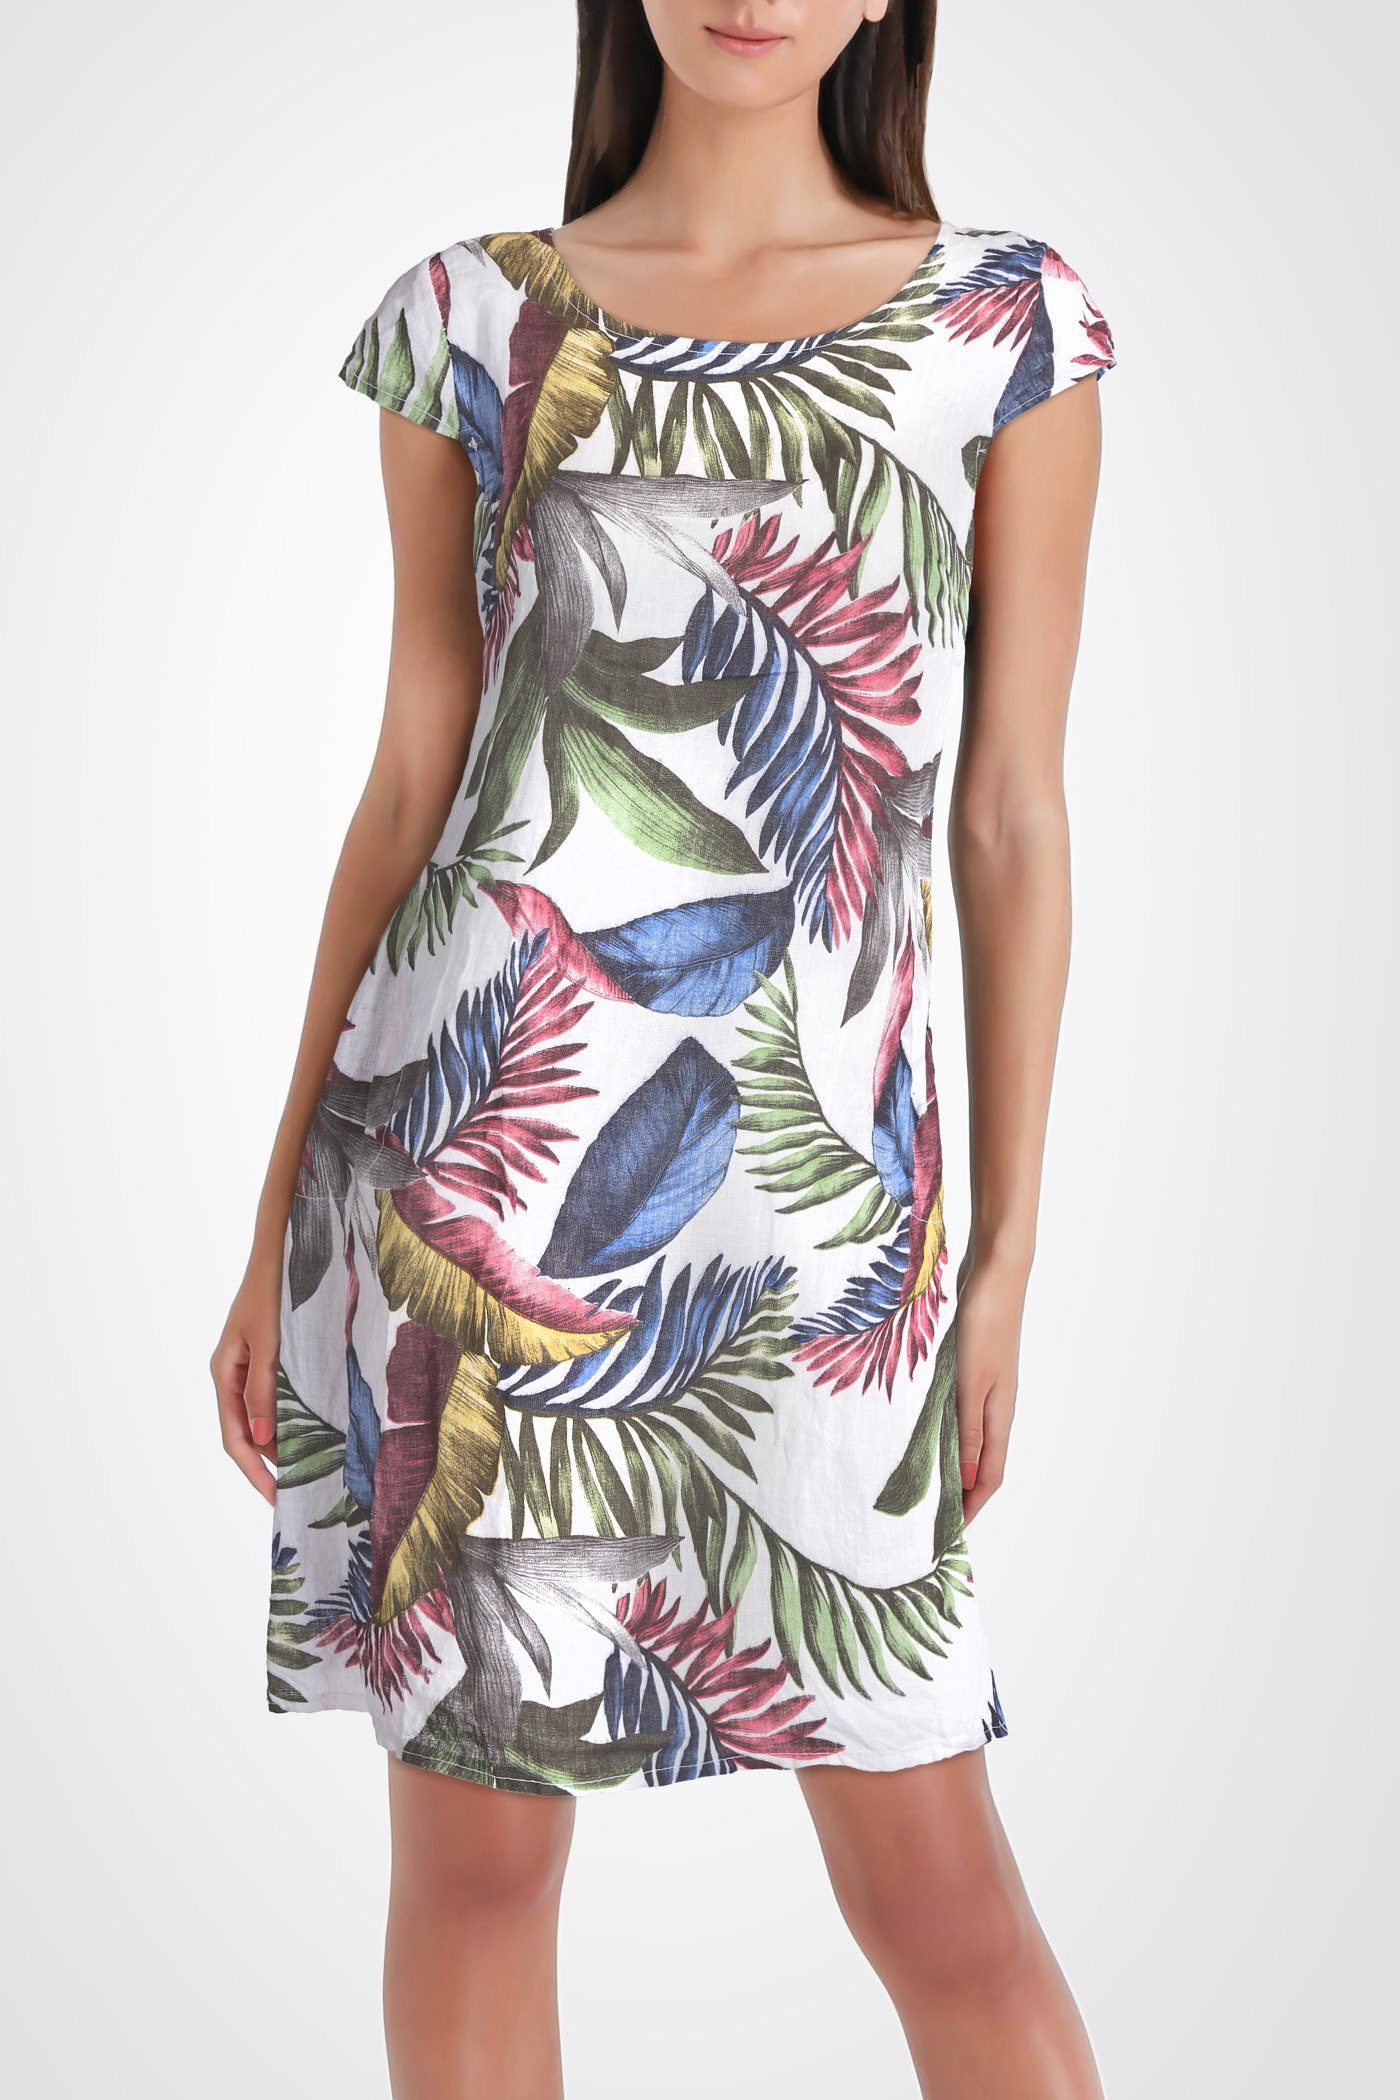 PEKIVESSA Sommerkleid »Leinenkleid Damen Kurzarm knielang« mit  Tropical-Print online kaufen | OTTO